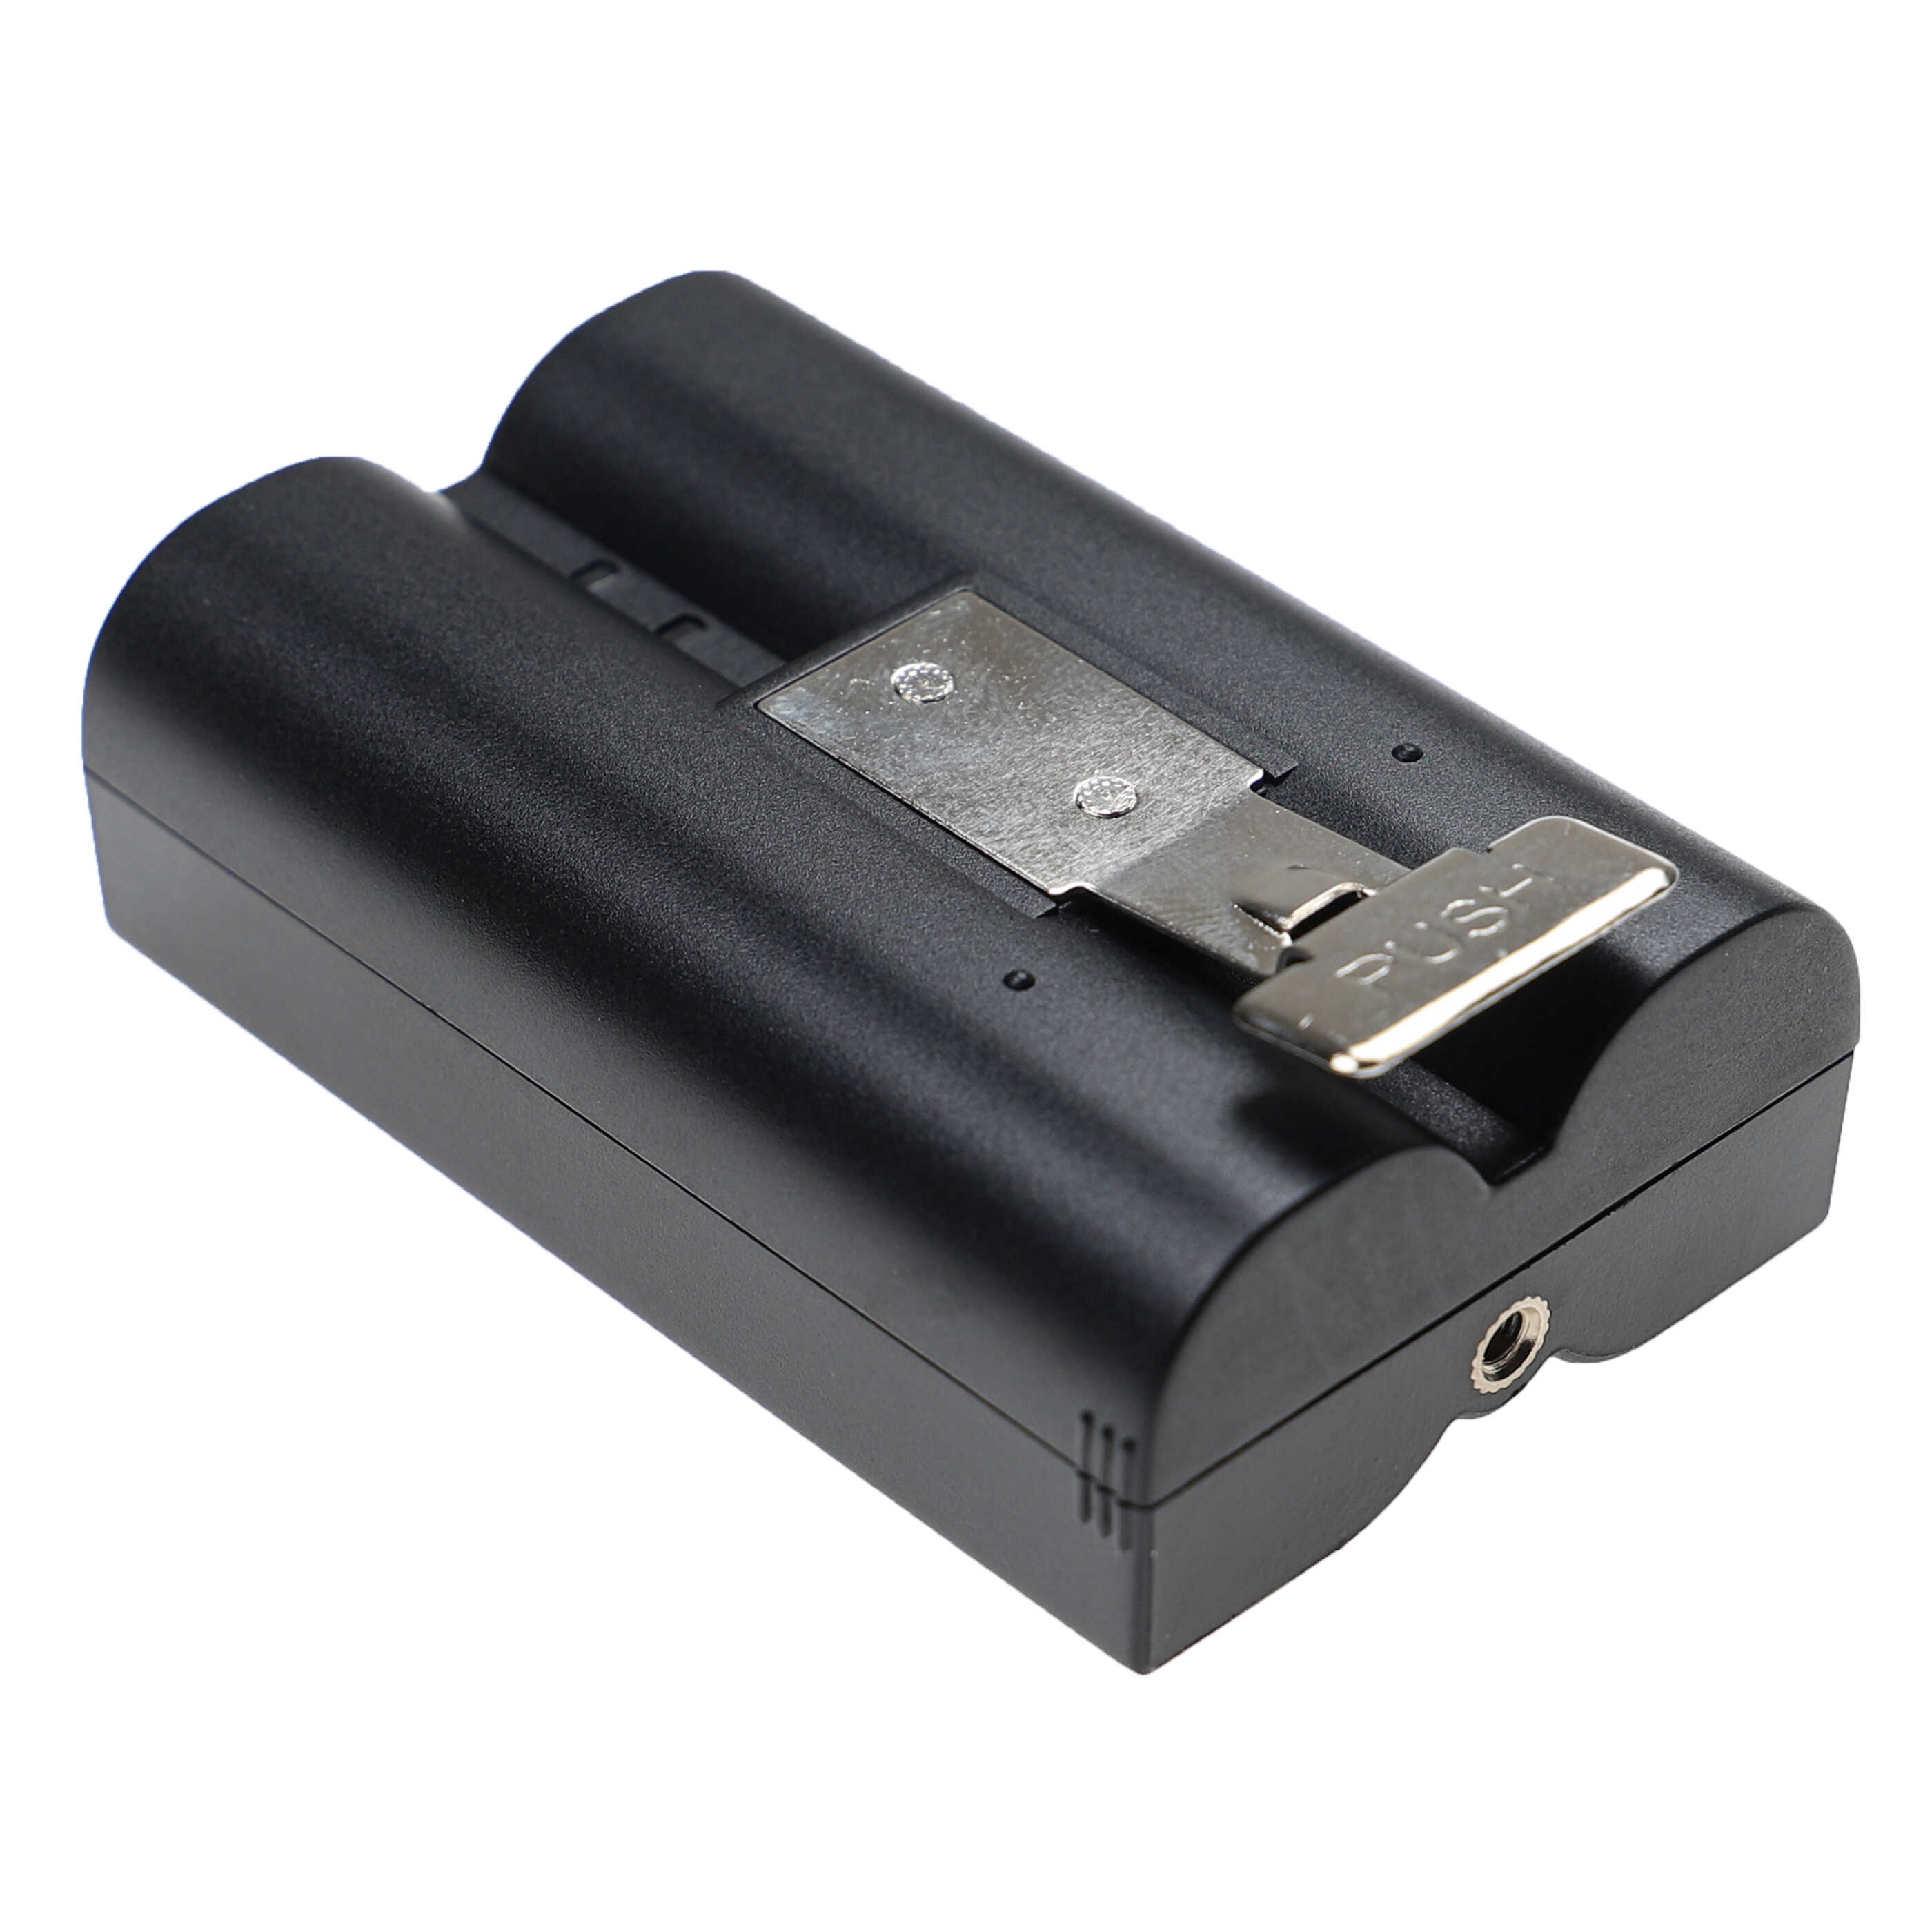 Akumulator do domofonu / wideodomofonu zamiennik Ring 8AB1S7-0EN0 - 6040 mAh 3,65 V Li-Ion